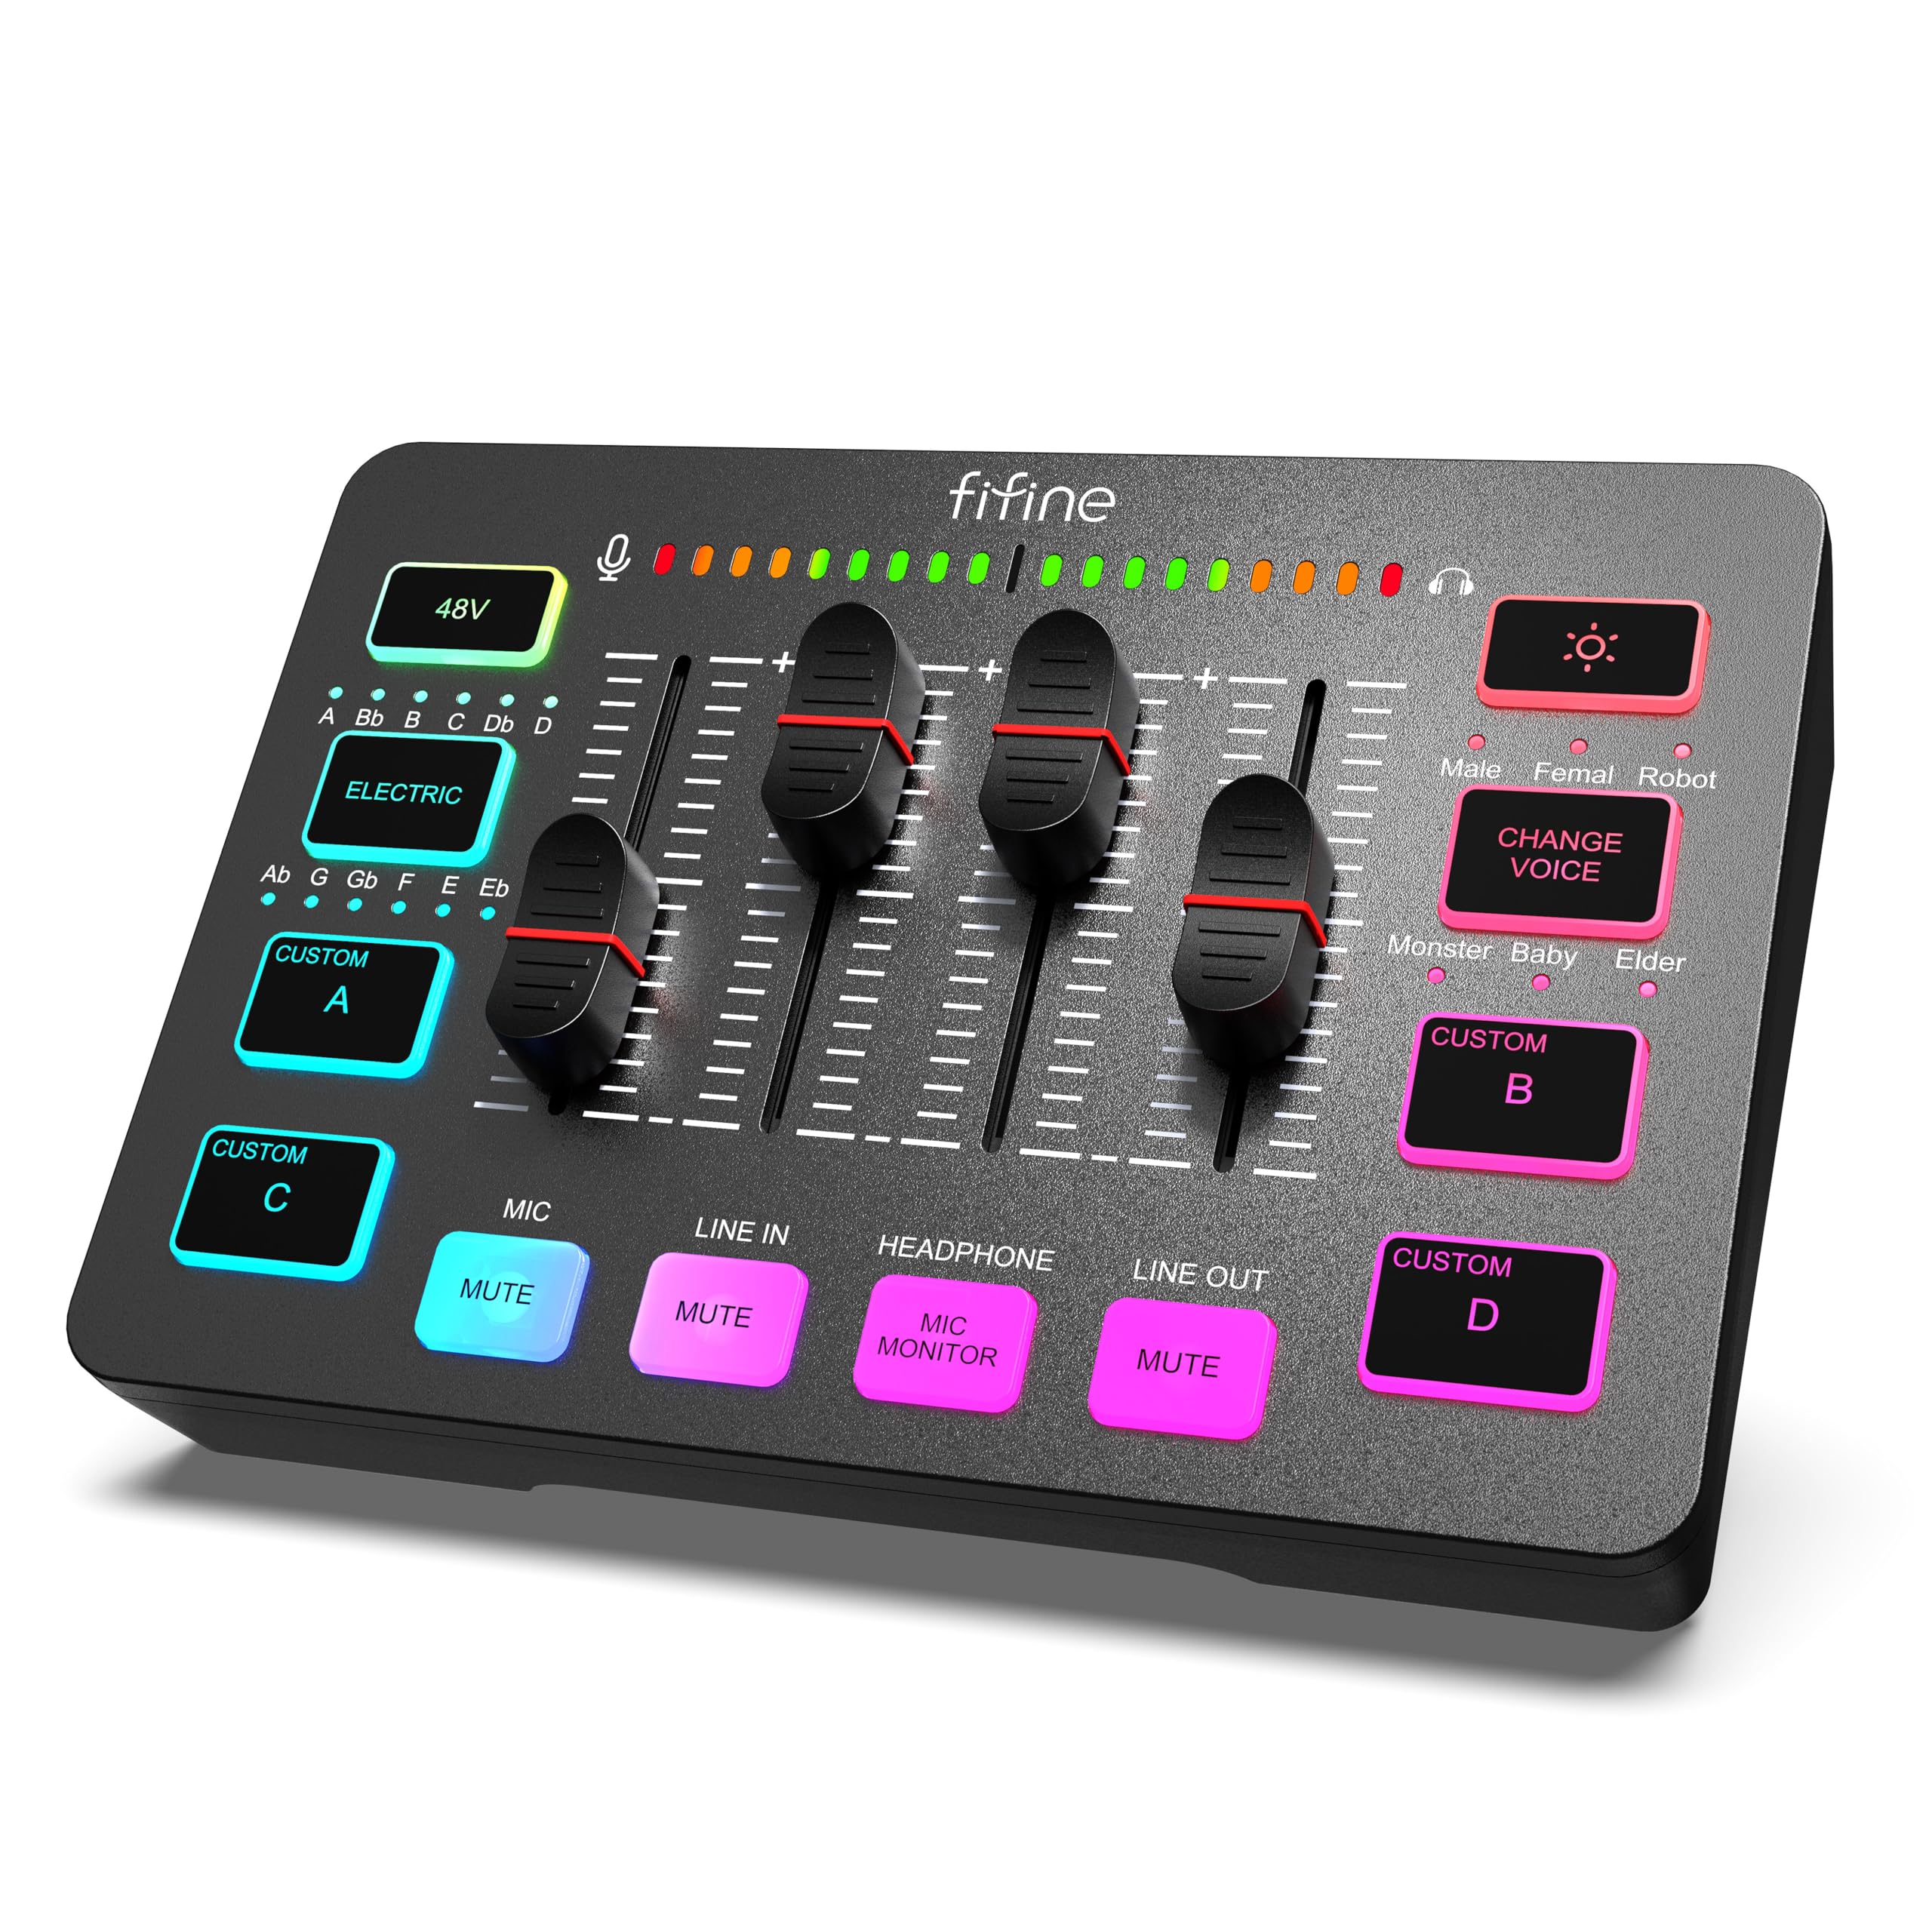 Parfait FIFINE Gaming Audio Mixer, Streaming RGB PC Mixer avec Interface Microphone XLR, Contrôle Individuel, Contrôle de Volume, Bouton de Mute, Alimentation Fantôme 48V, pour Podcast Enregistrement IOFrdkRUX boutique en ligne